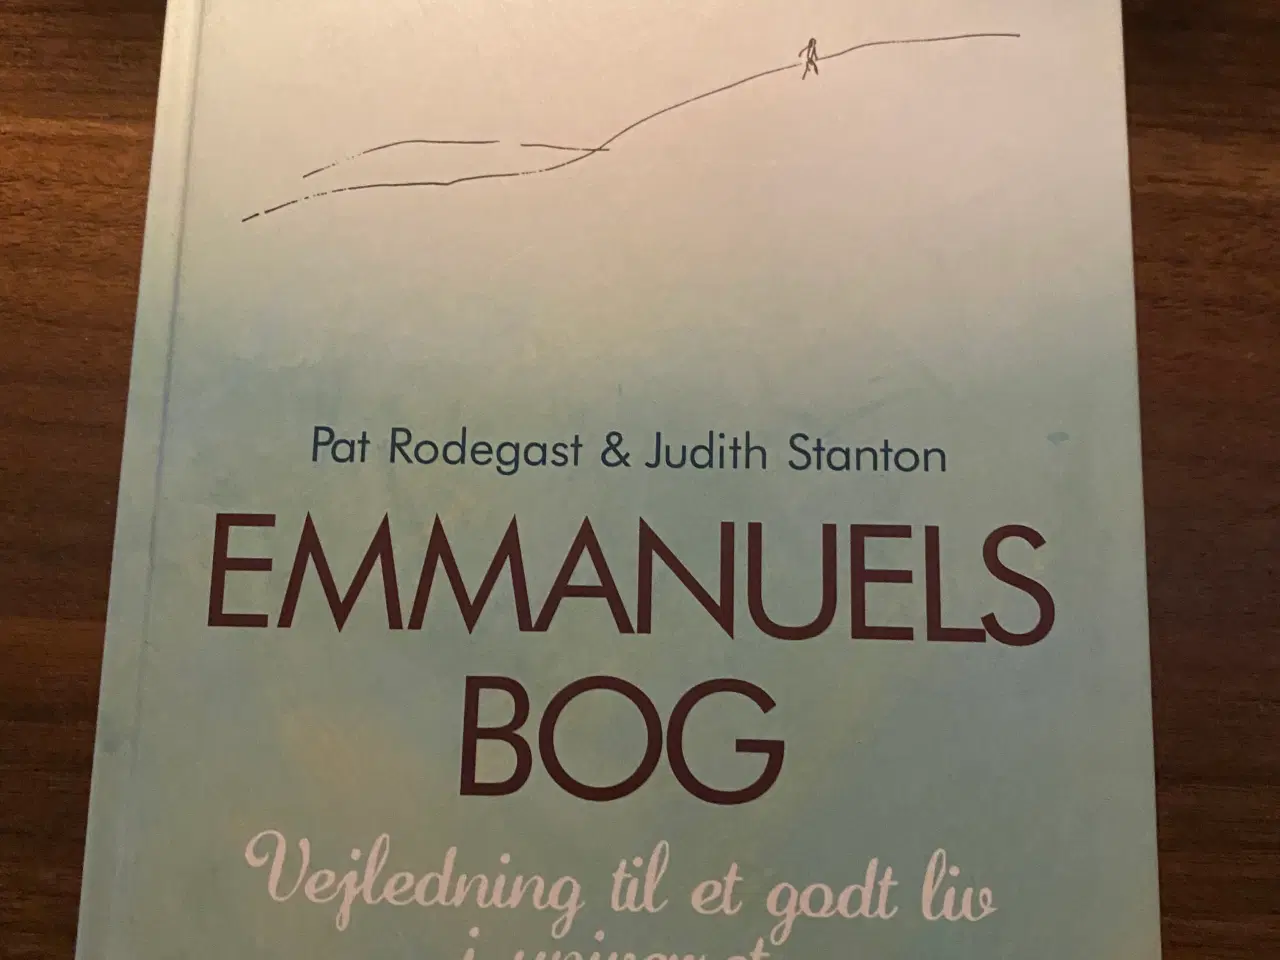 Billede 1 - EMMANUELS Bog, Pat Rodegast og Judith Stanton